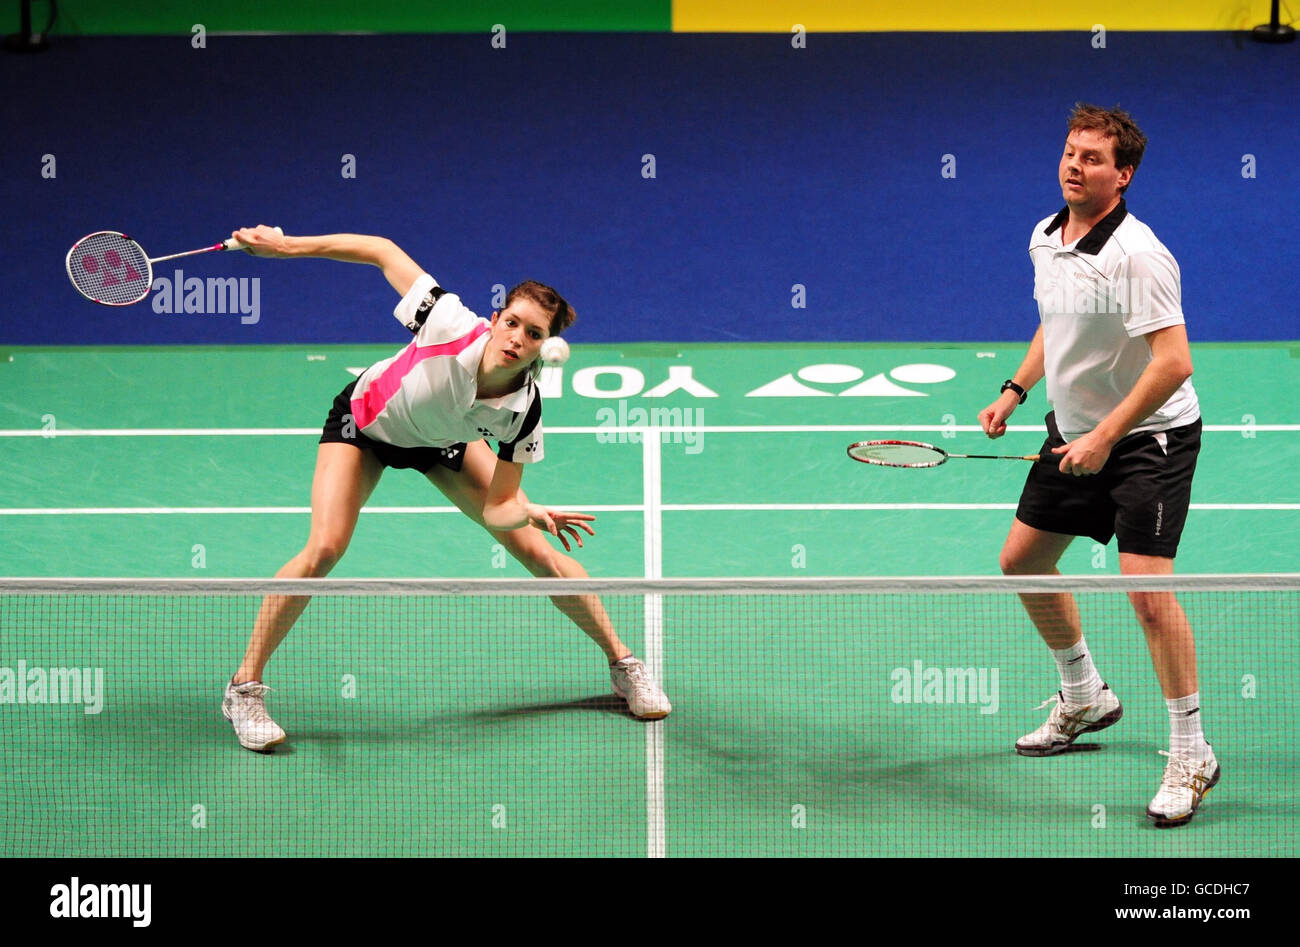 Die Engländer Anthony Clark (rechts) und Heather Olver im Einsatz gegen die Koreaner Yong DAE Lee und Hyo Jung Lee (nicht abgebildet) während der Yonex All England Open Badminton Championships im NIA, Birmingham. Stockfoto